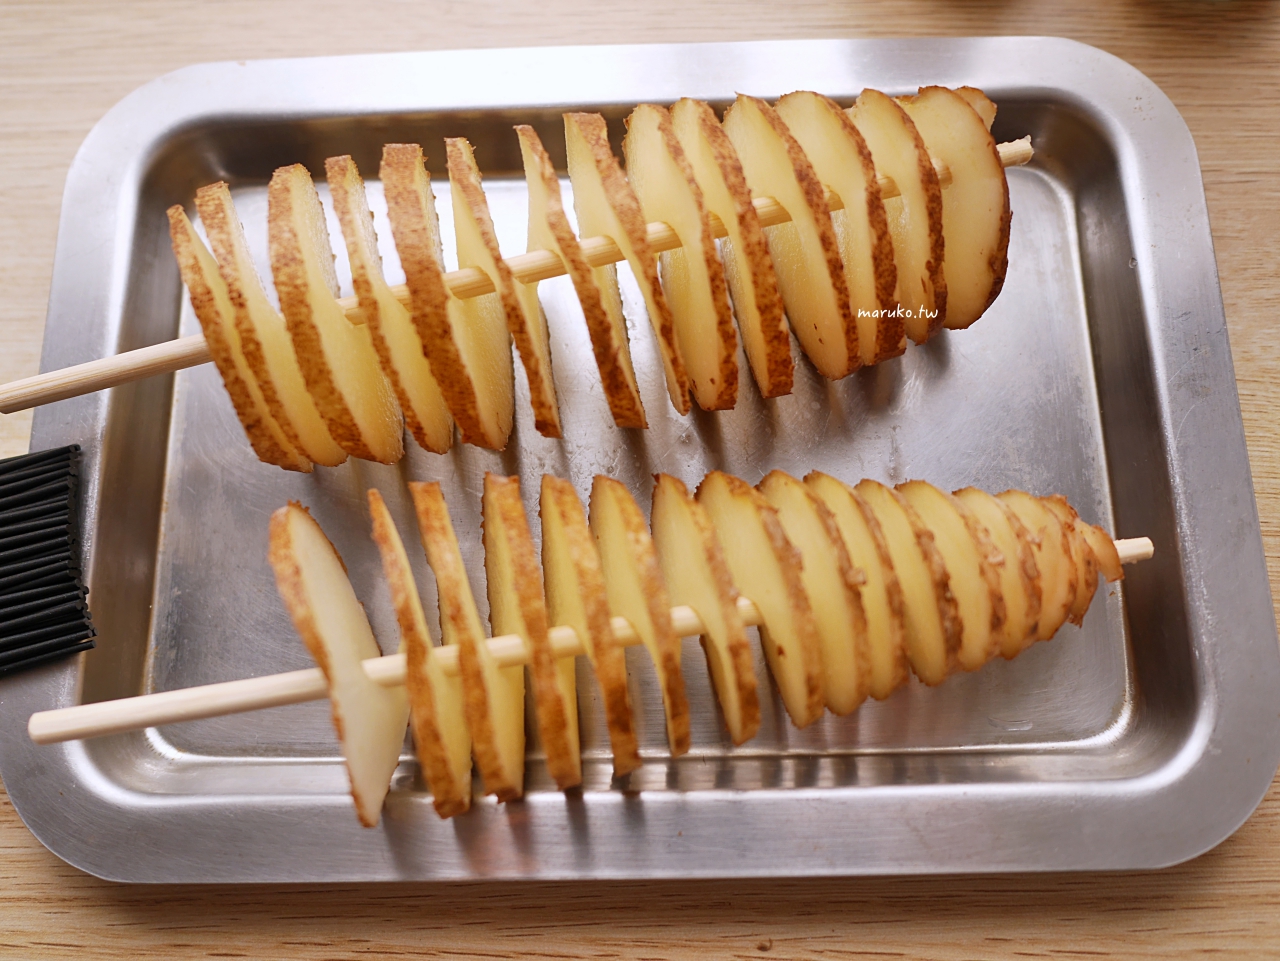 【食譜】旋轉馬鈴薯塔 香酥馬鈴薯片 只要10分鐘就能完成的氣炸鍋食譜 @Maruko與美食有個約會